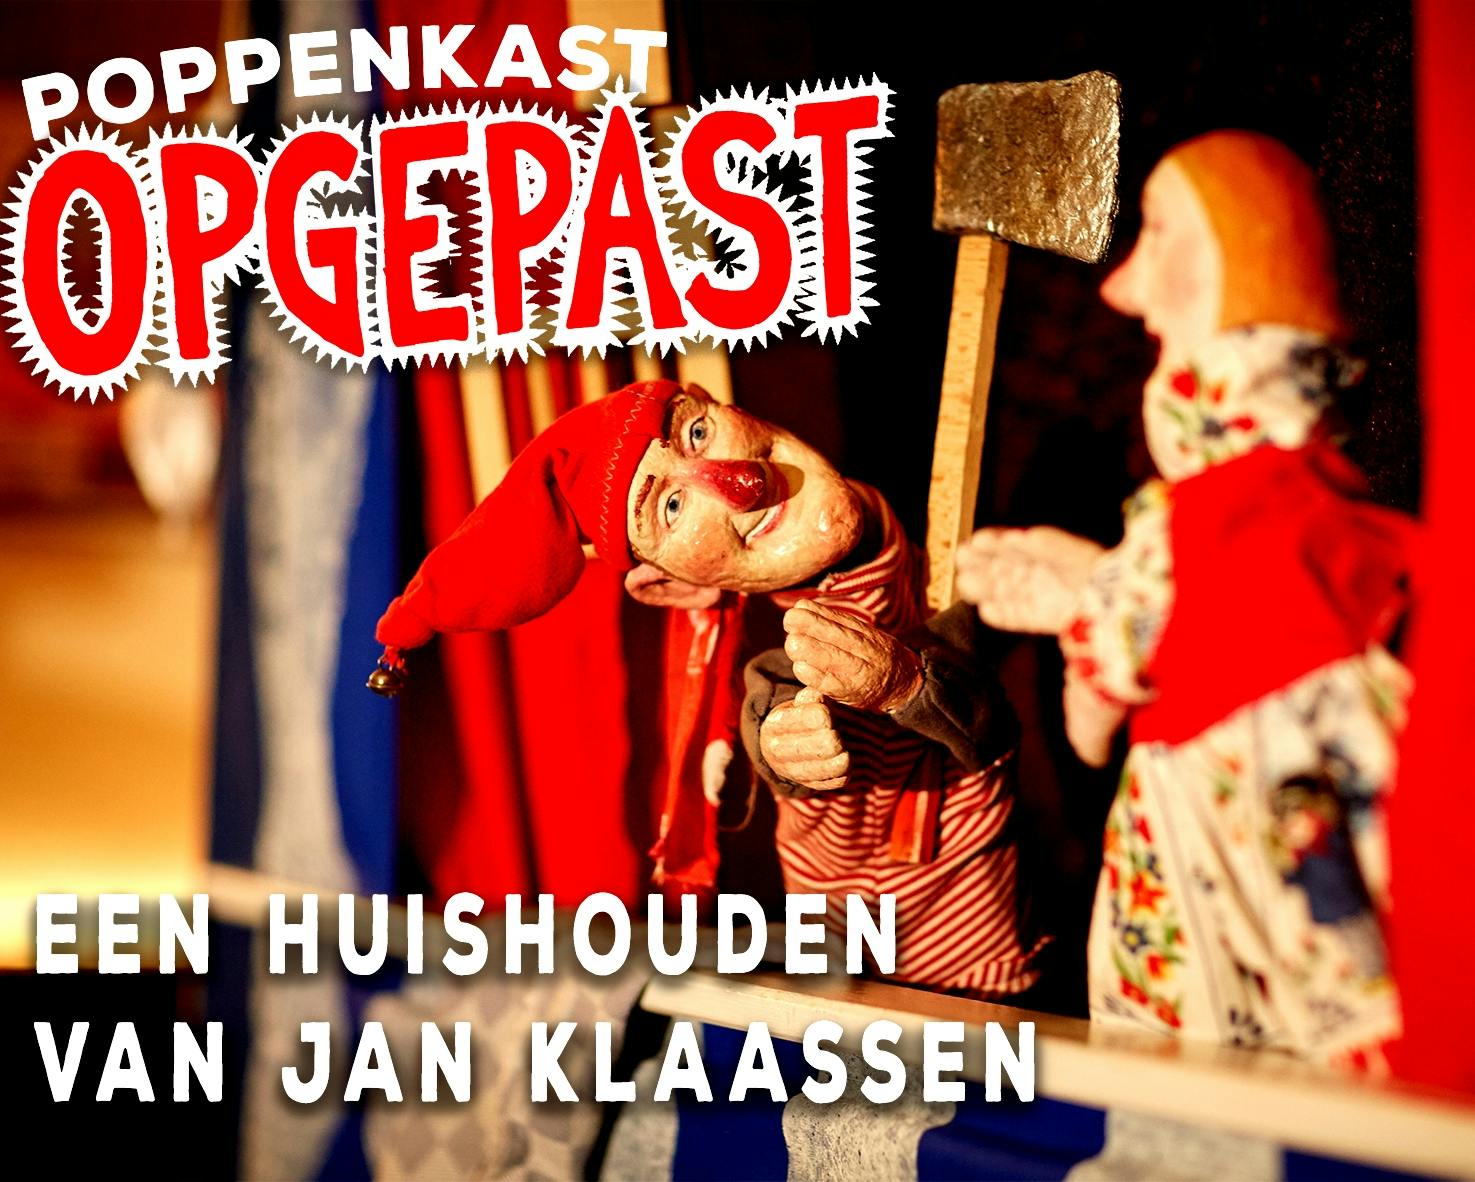 Een huishouden van Jan Klaassen! (2+) met Schminken! in Poppentheater Koos Kneus